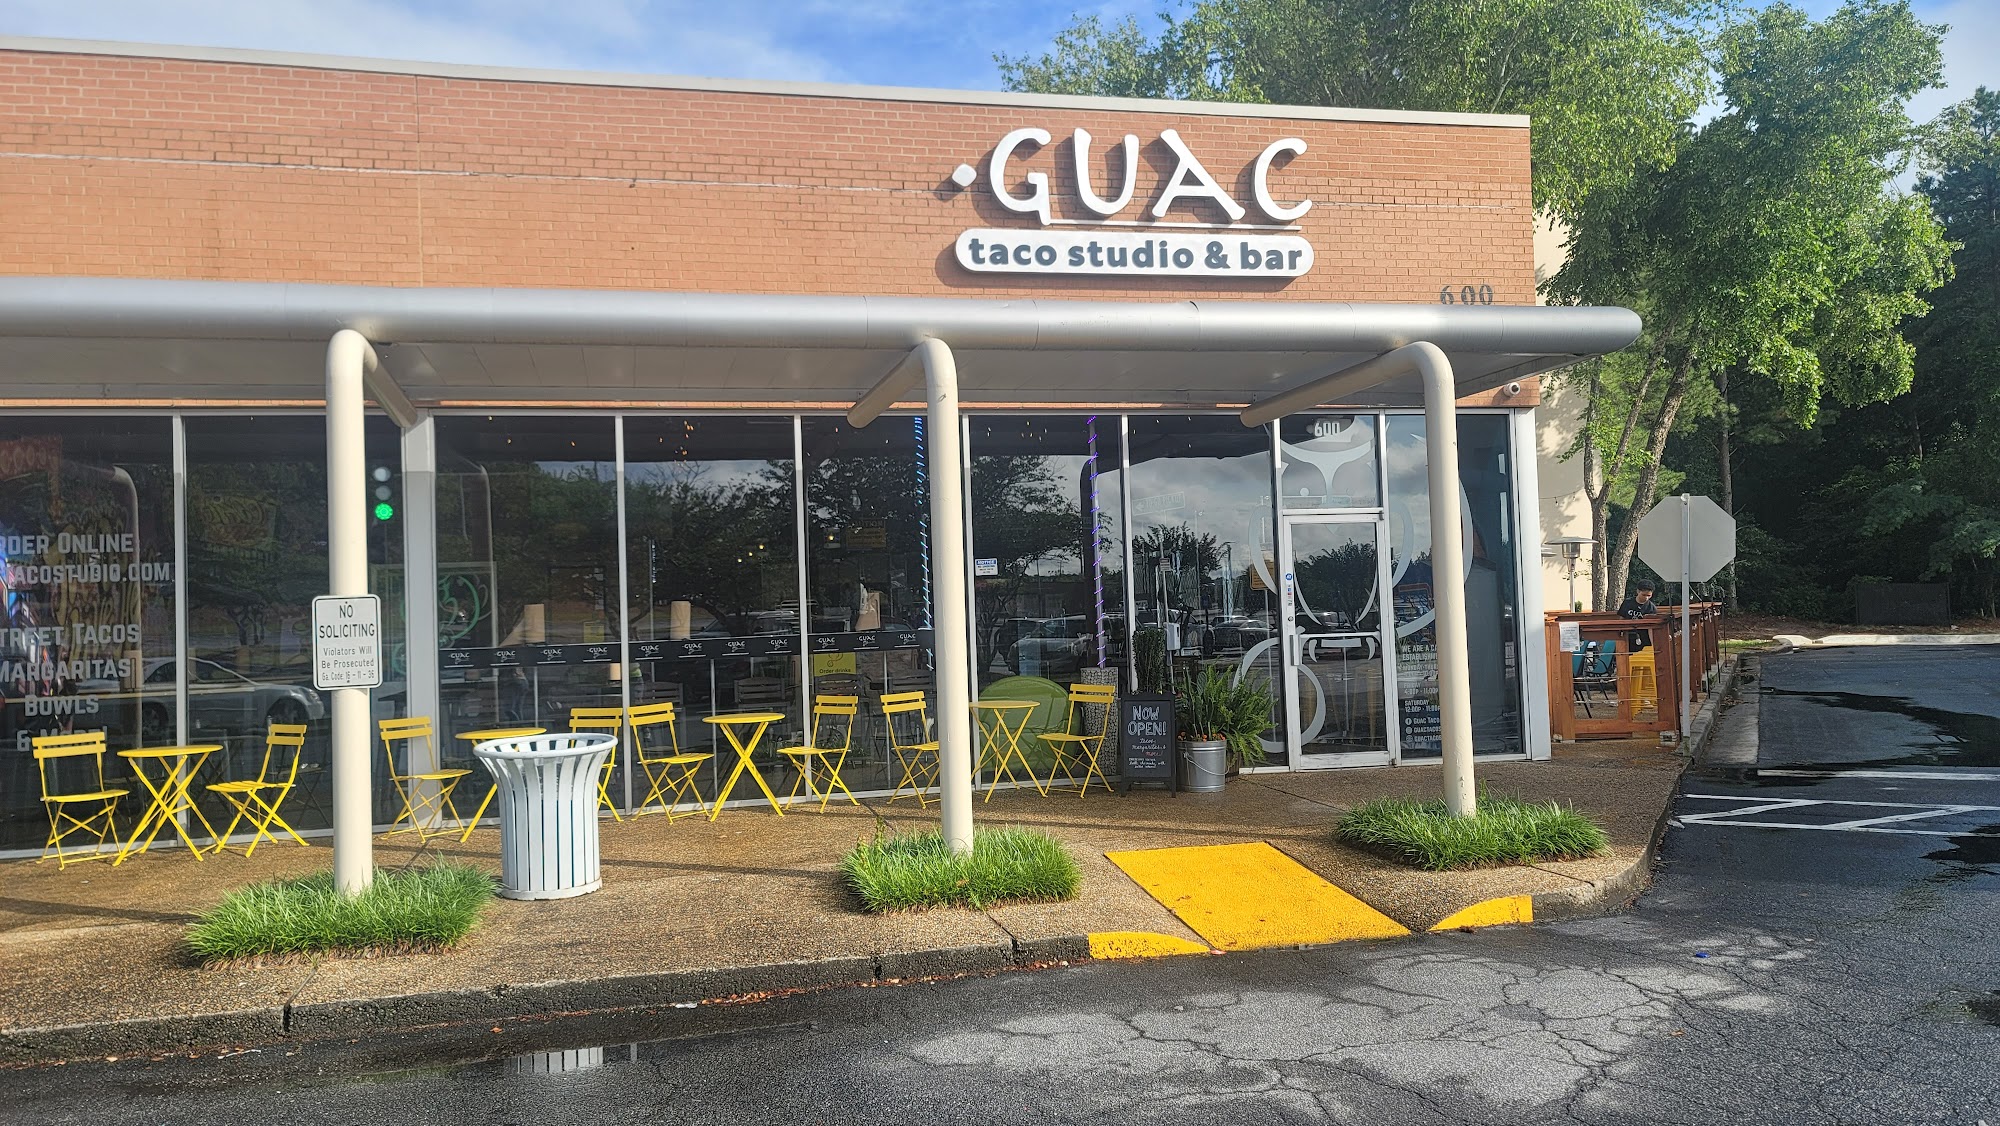 Guac Taco Studio & Bar